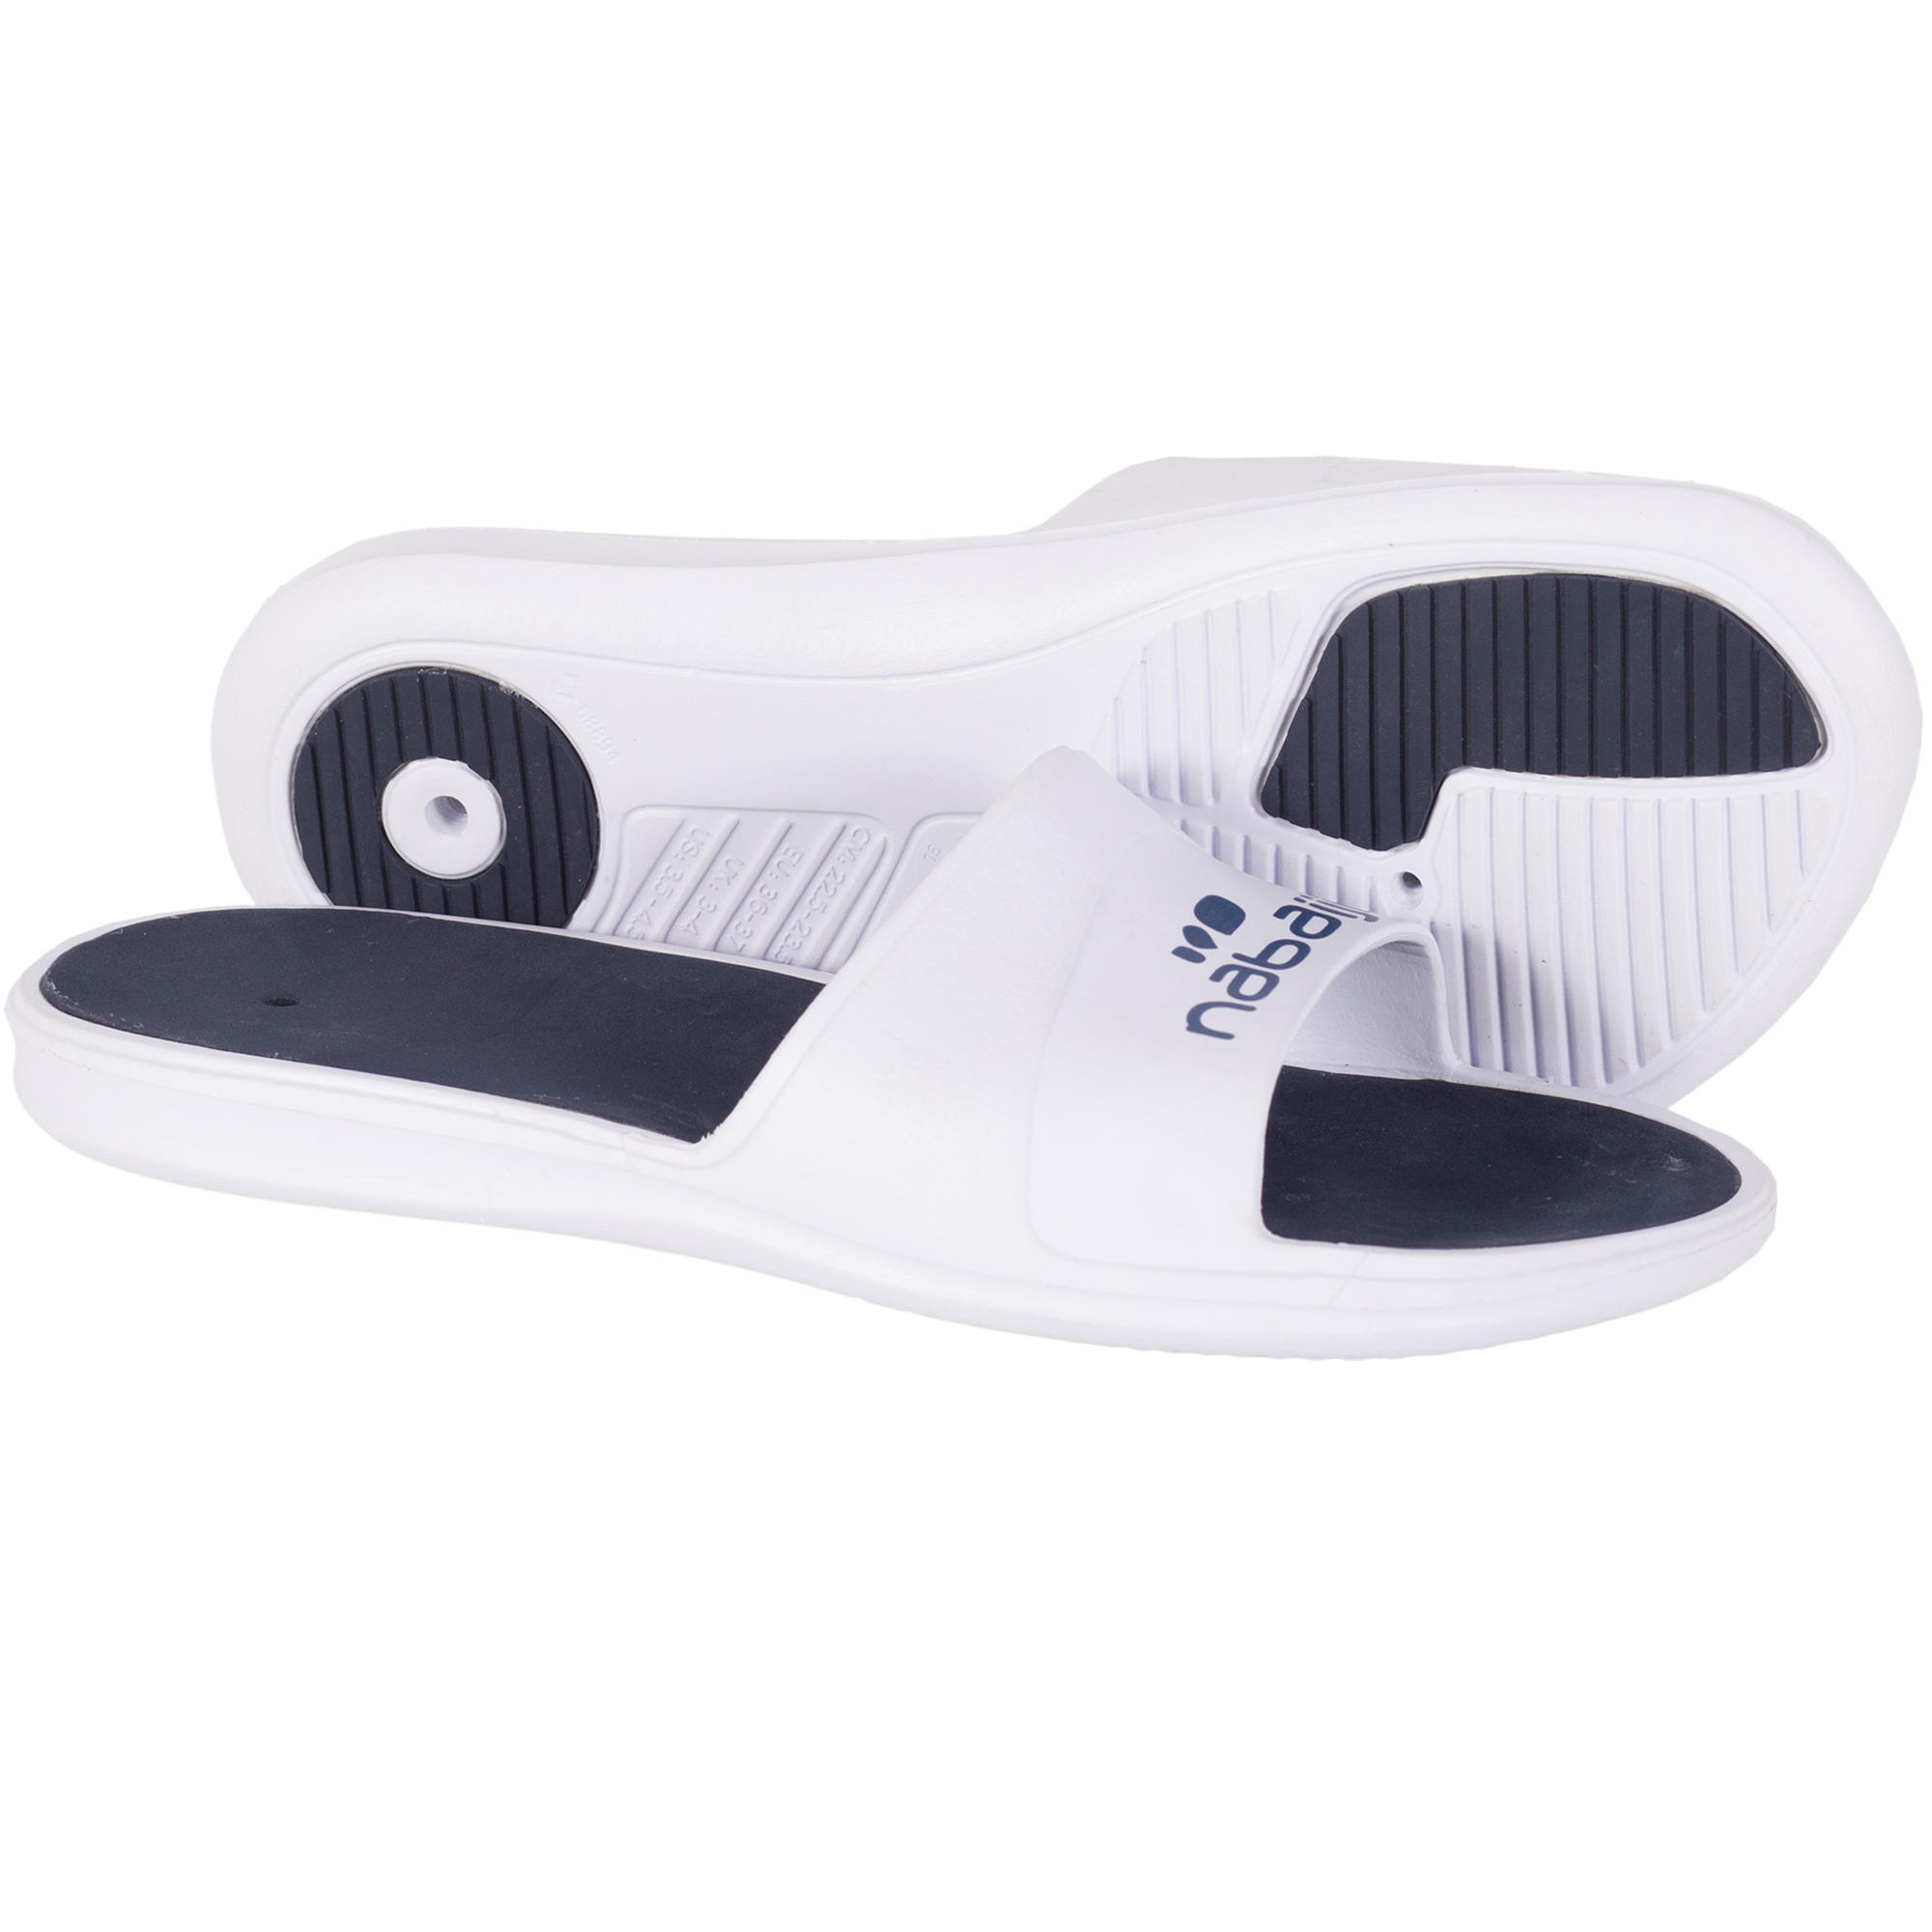 Sandales depa-cab hes Synthétique Suicoke pour homme en coloris Blanc claquettes et tongs Sandales en cuir Homme Chaussures Sandales 